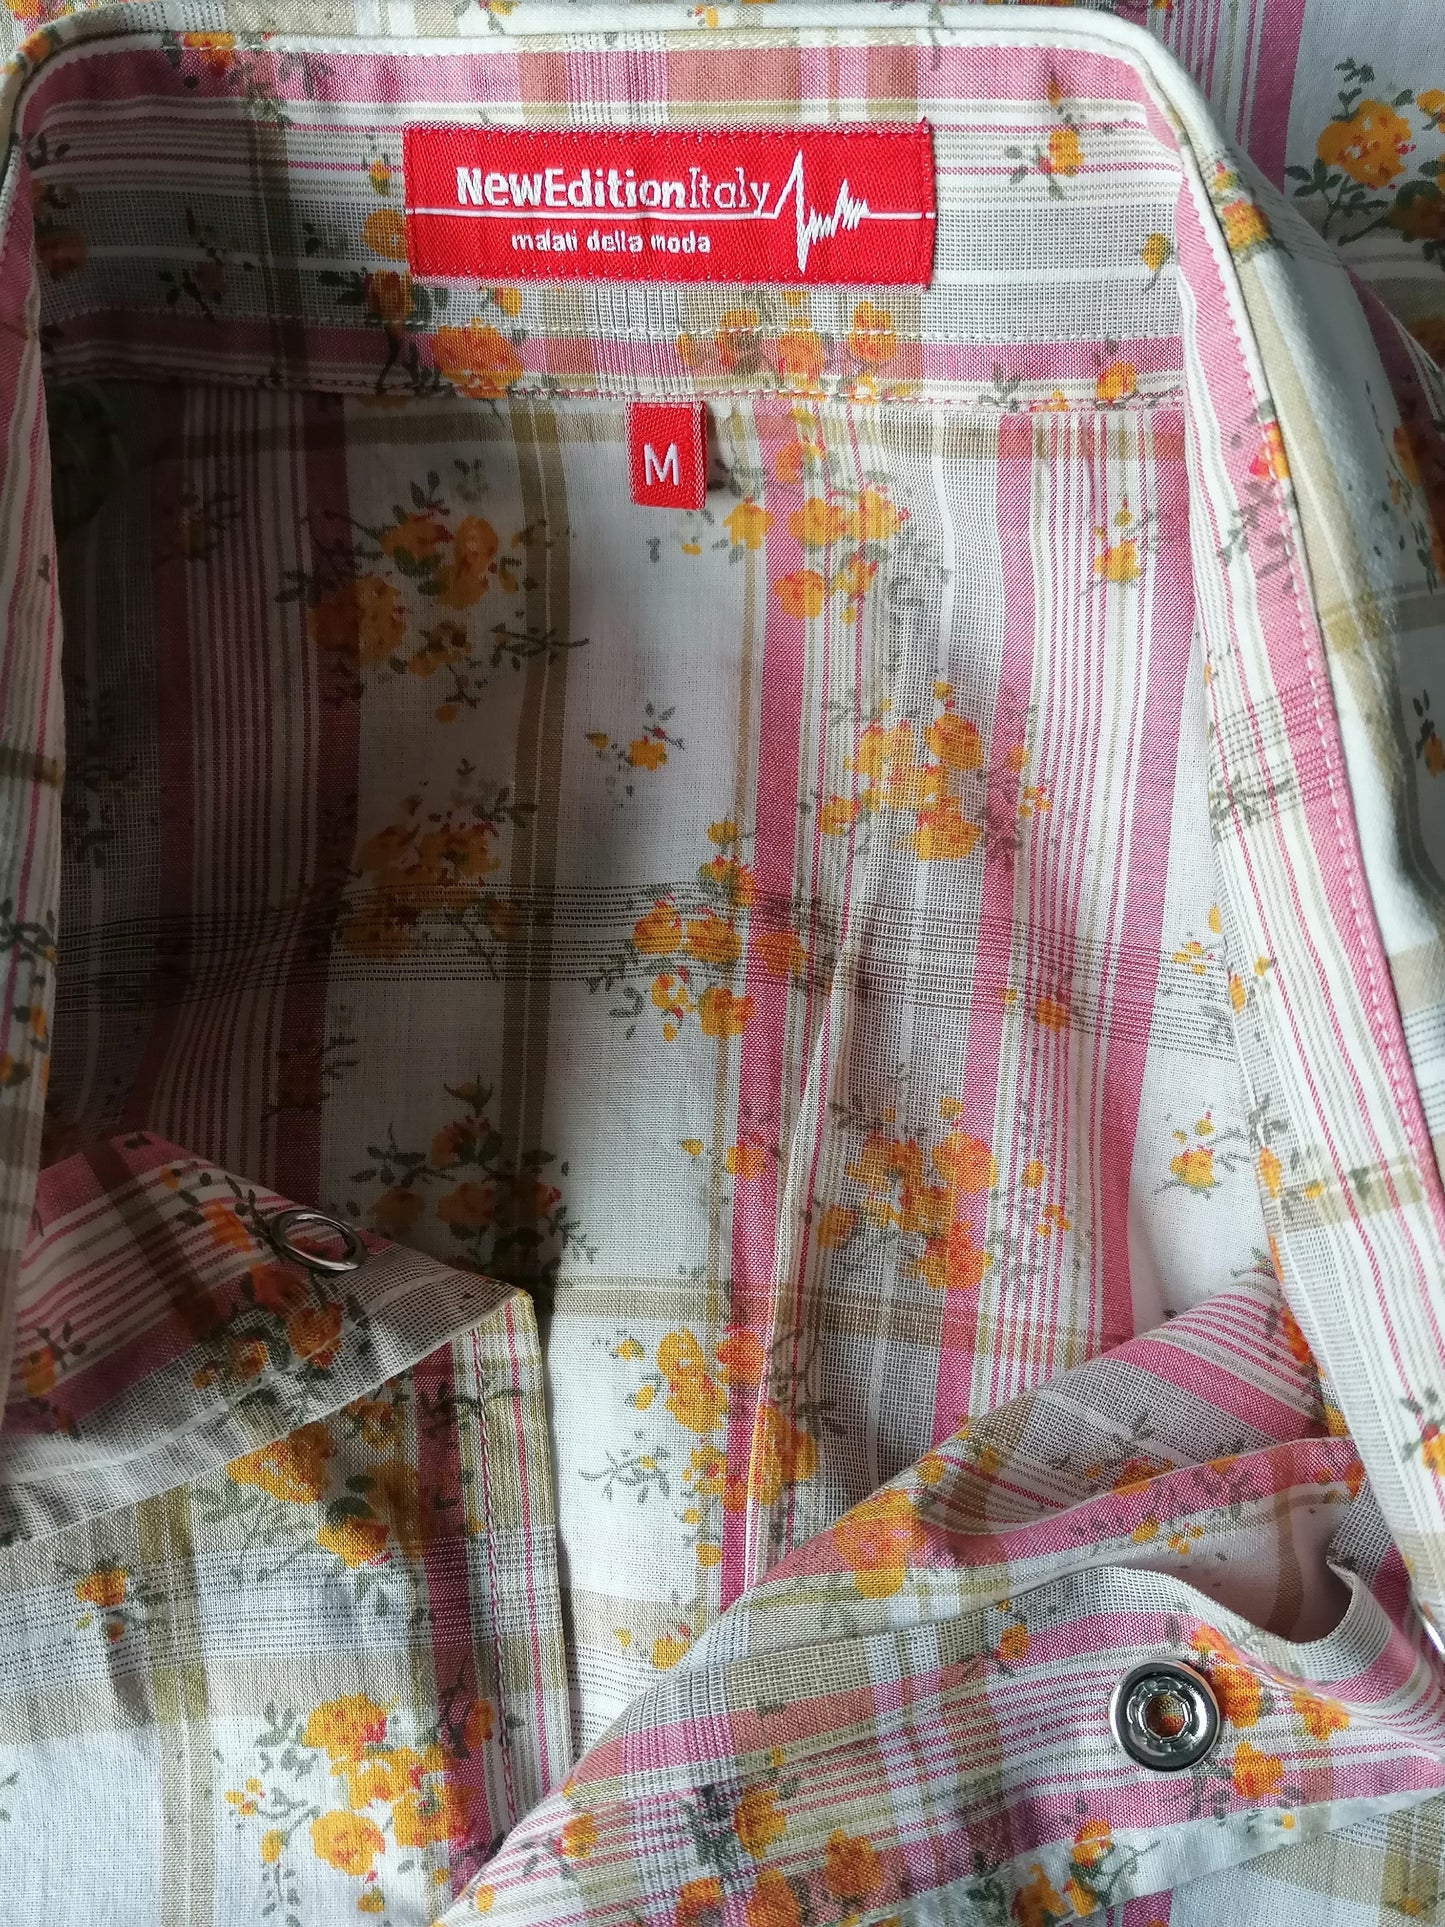 NEUE Edition Shirt Kurzärmel mit Pressebutter. Orange rosa beige Blüten drucken. Größe M.